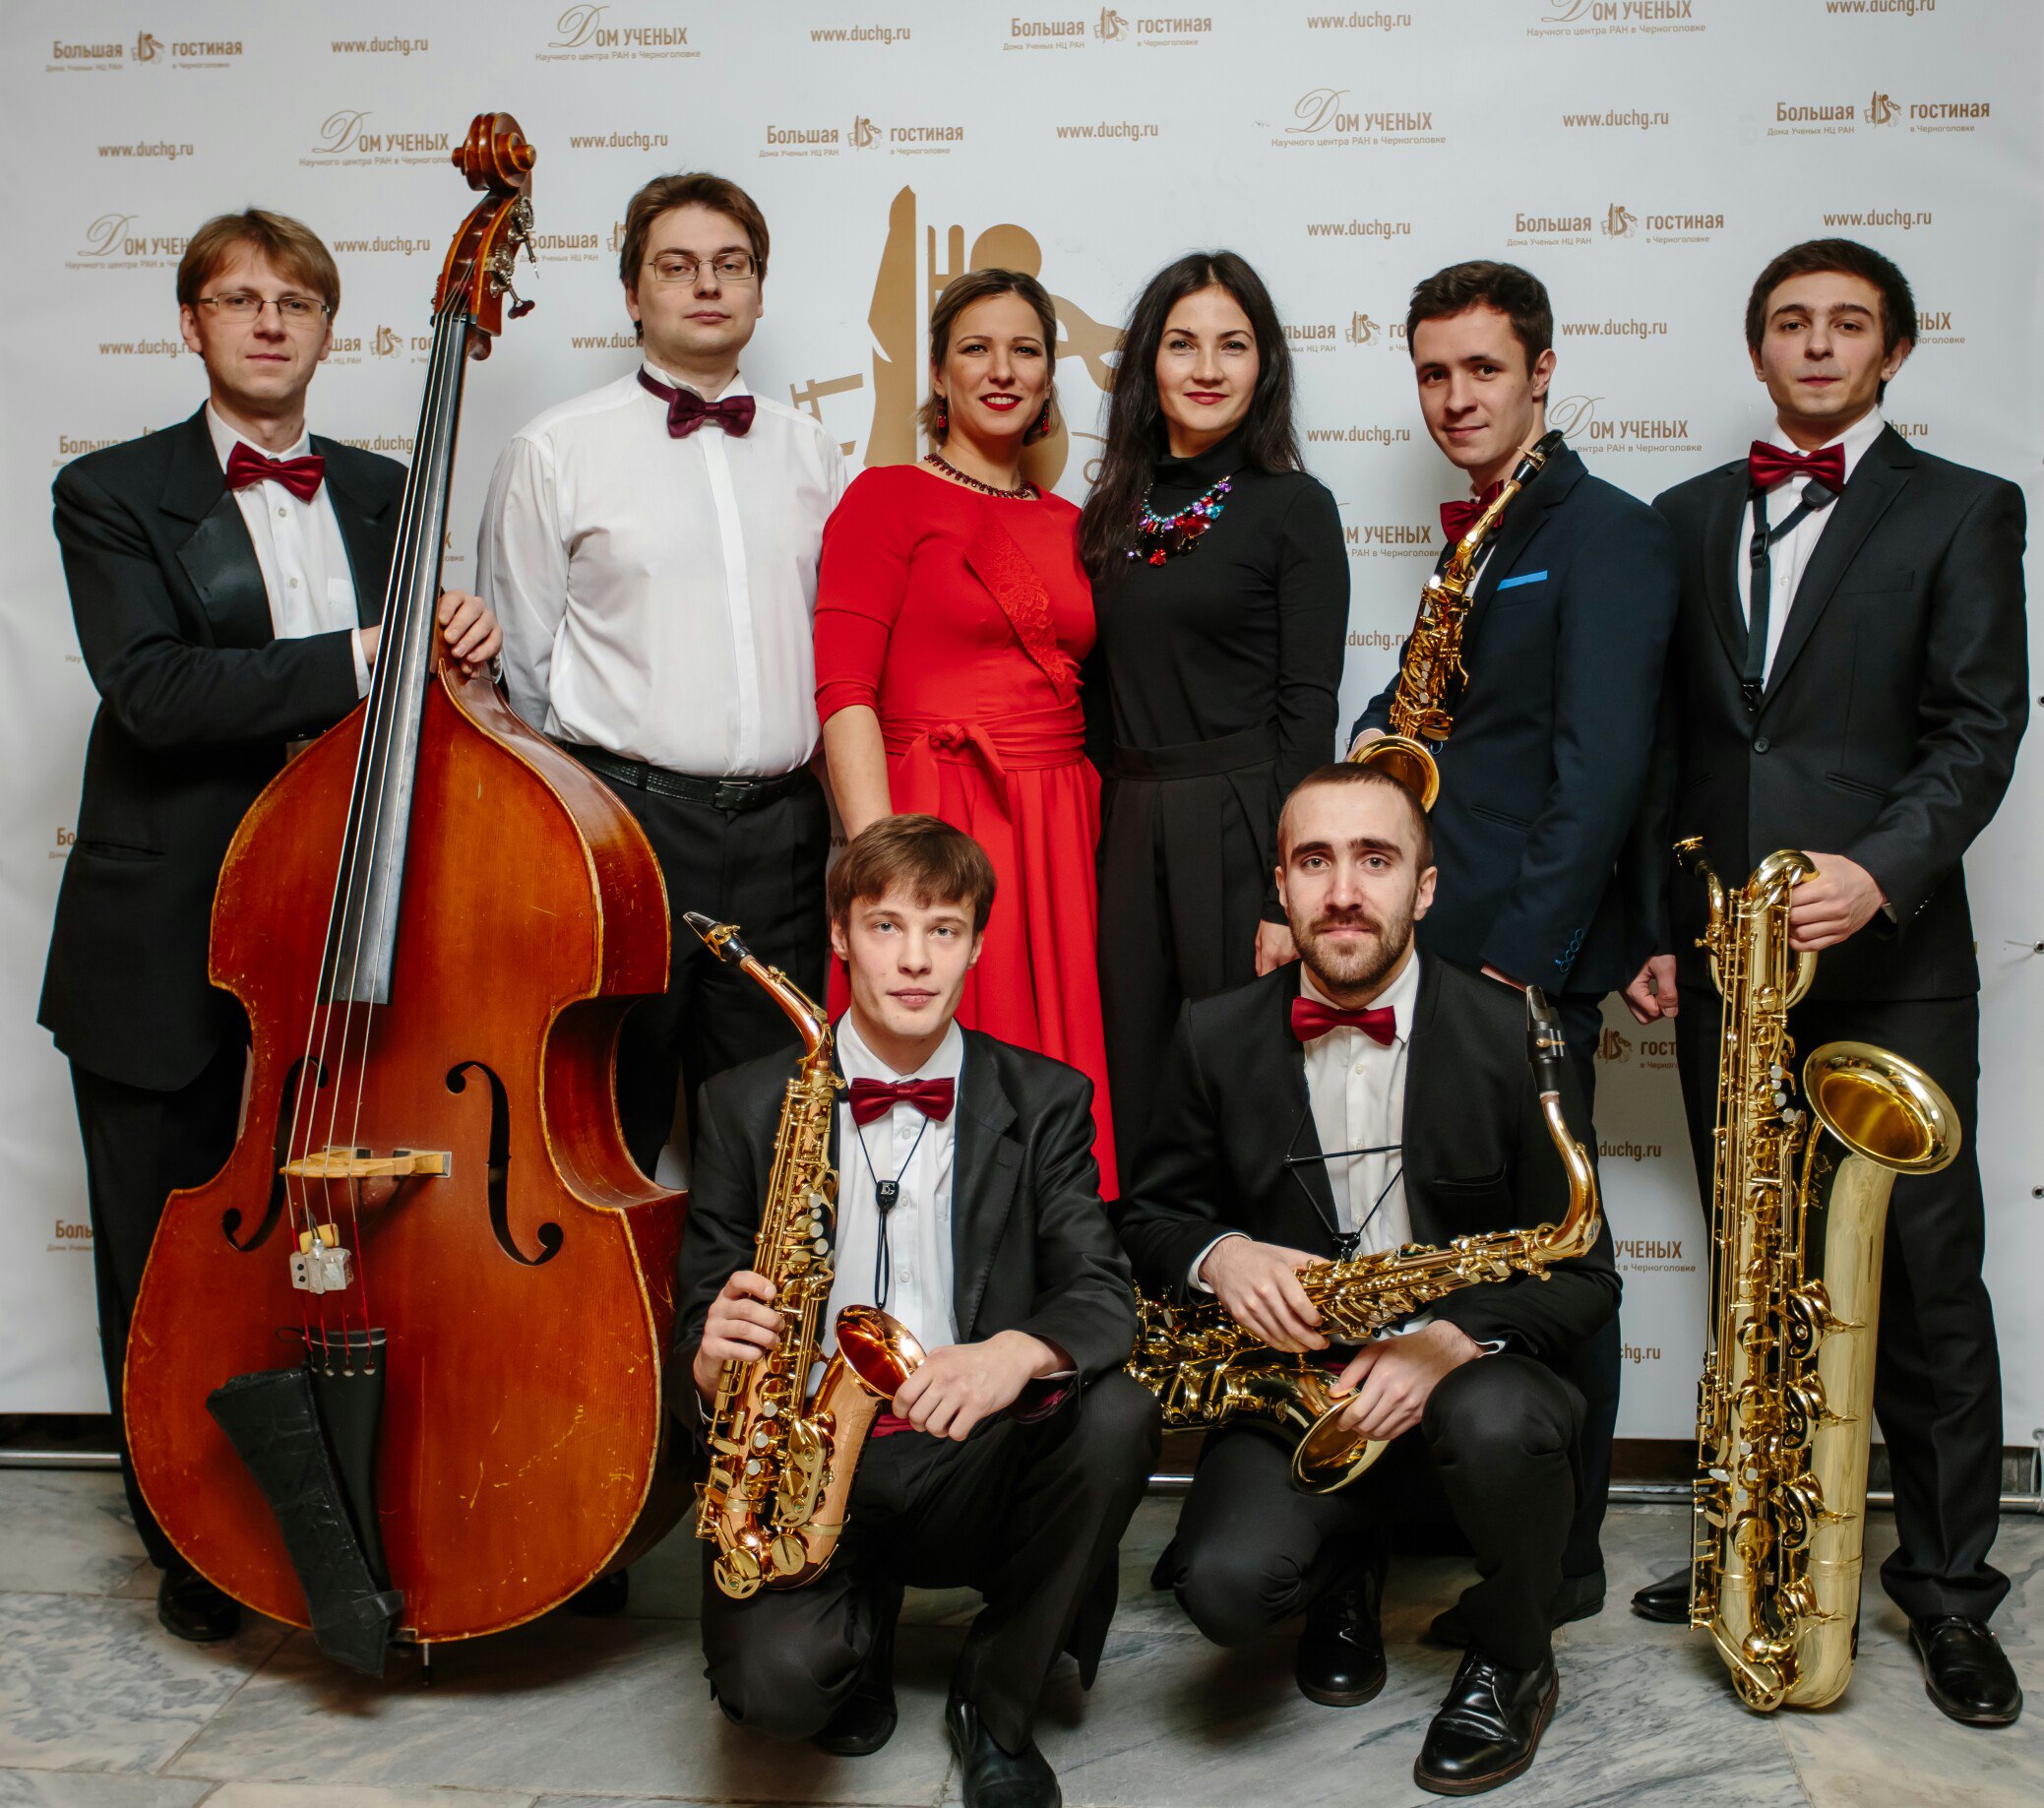 Фестиваль джаза пройдет в Коломенском